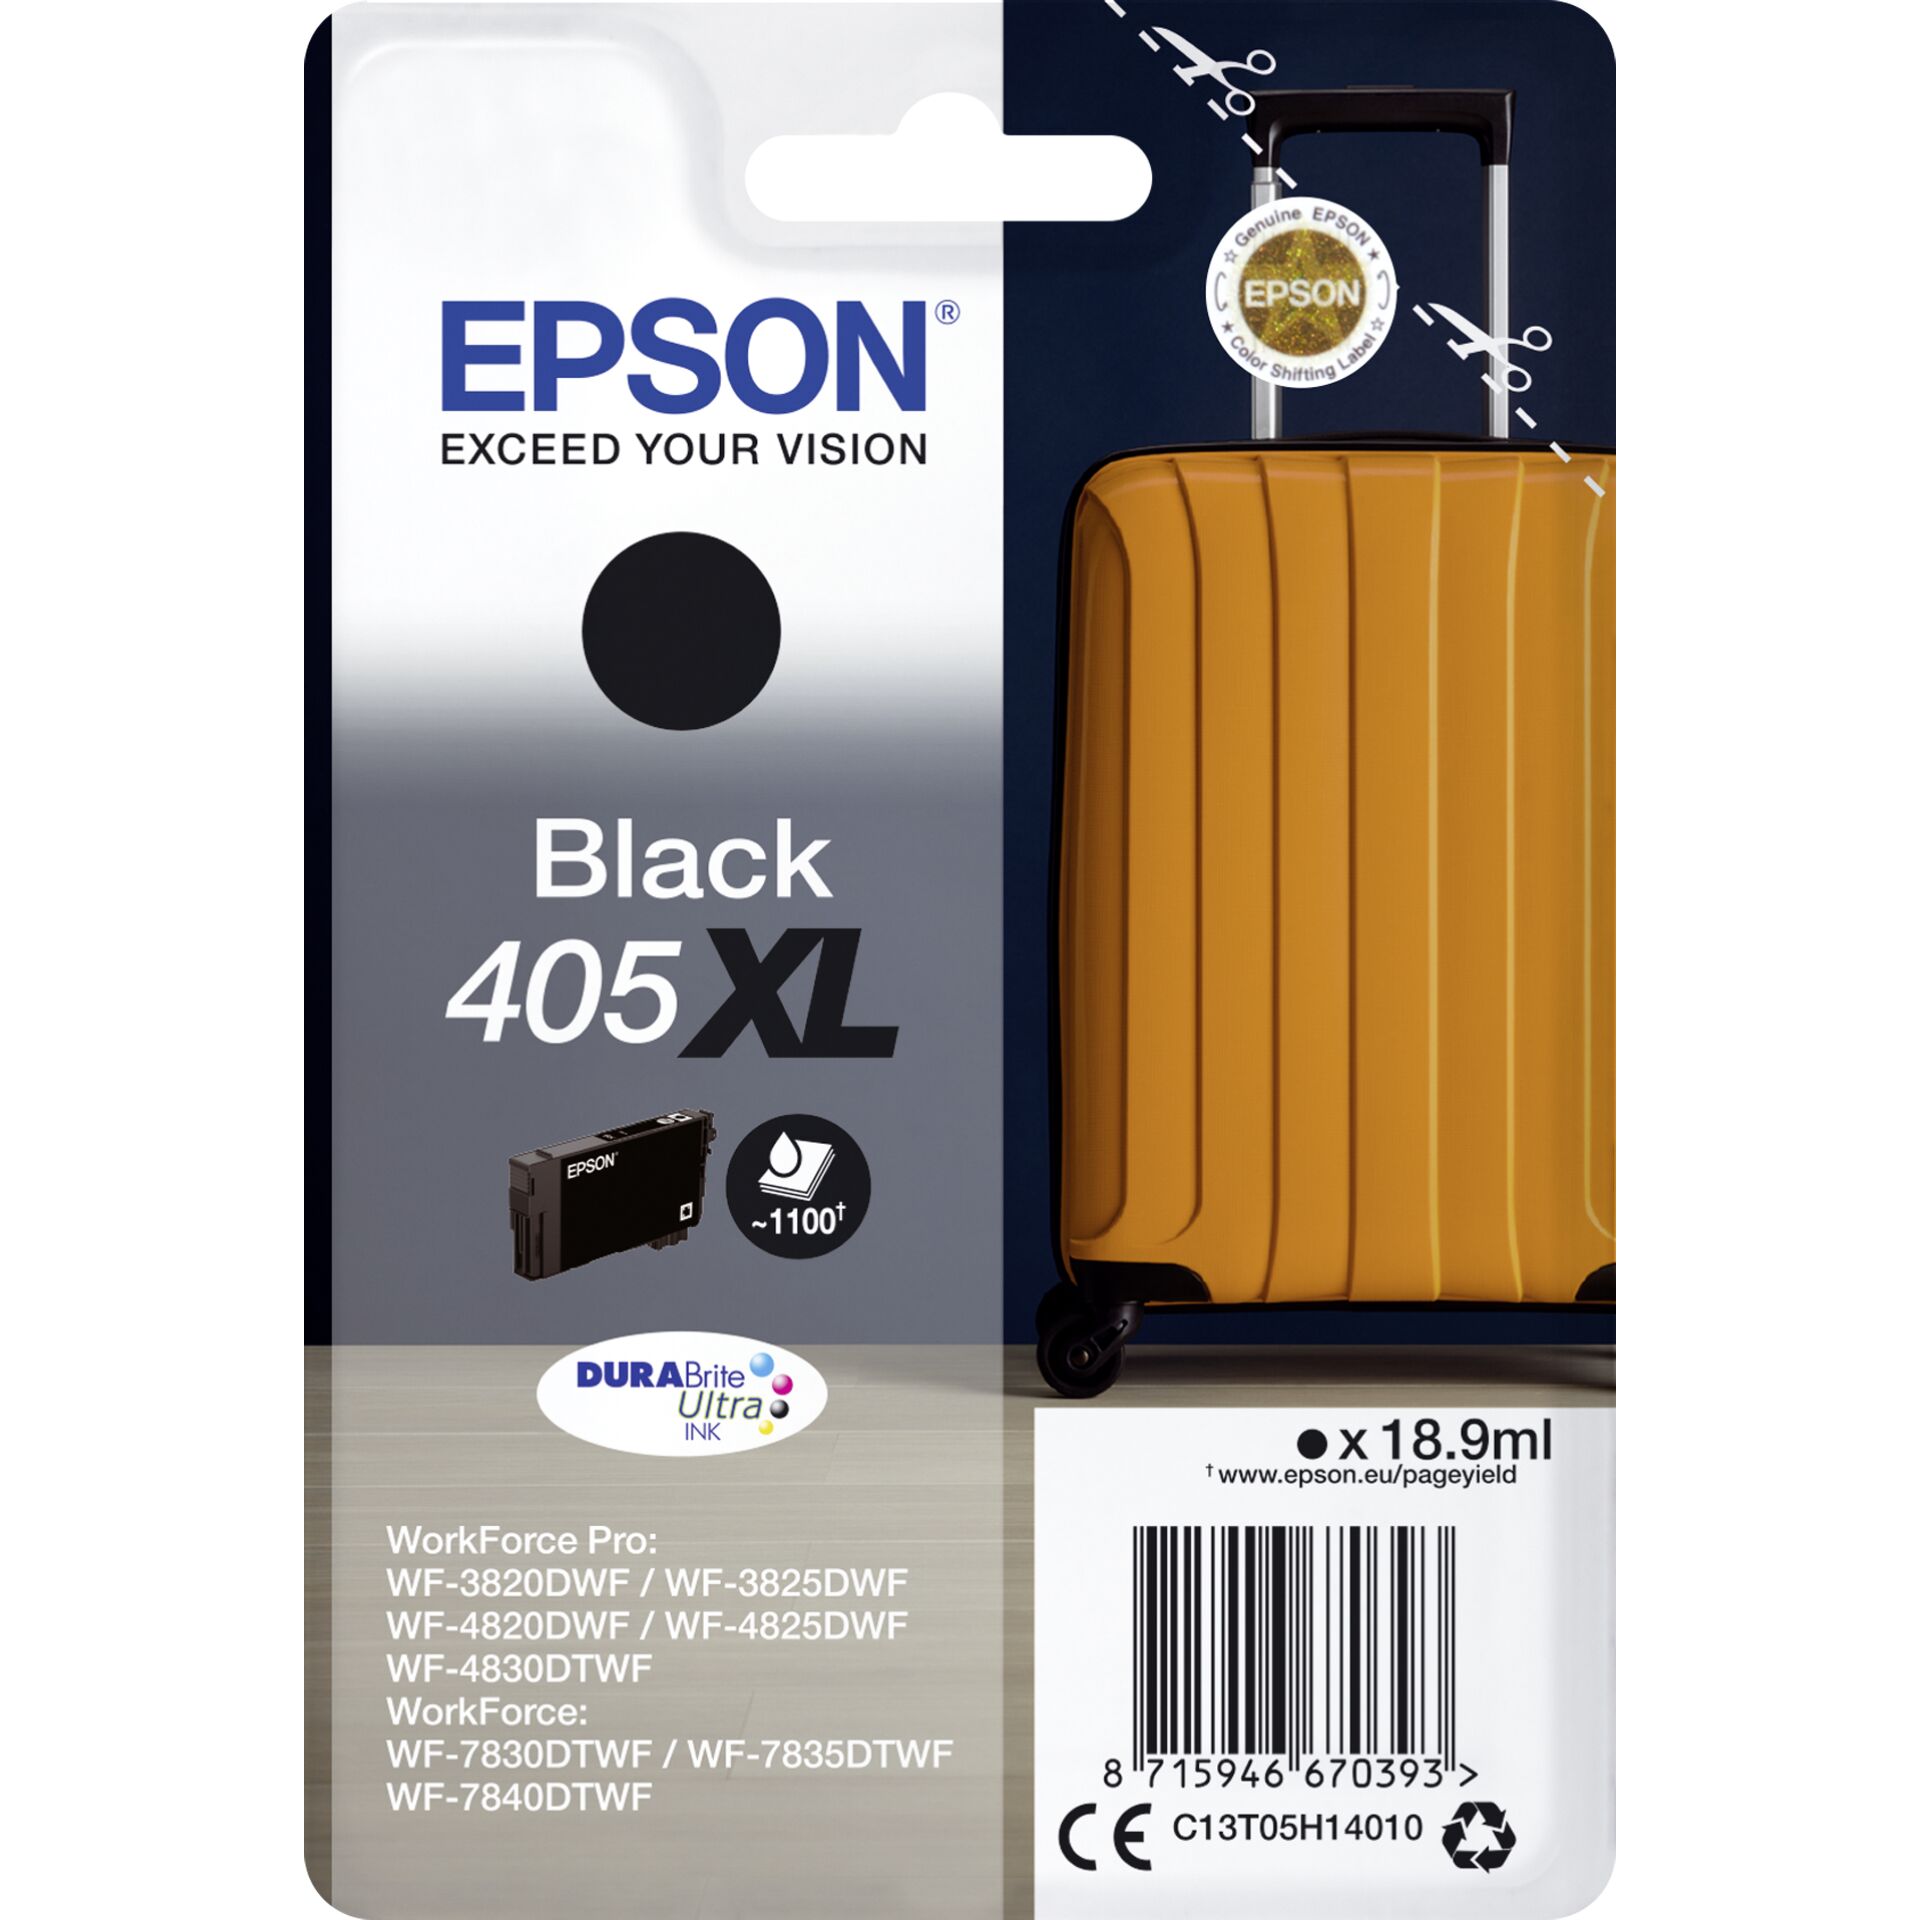 Epson Tinte 405XL schwarz, Original Kapazität: 18.9ml